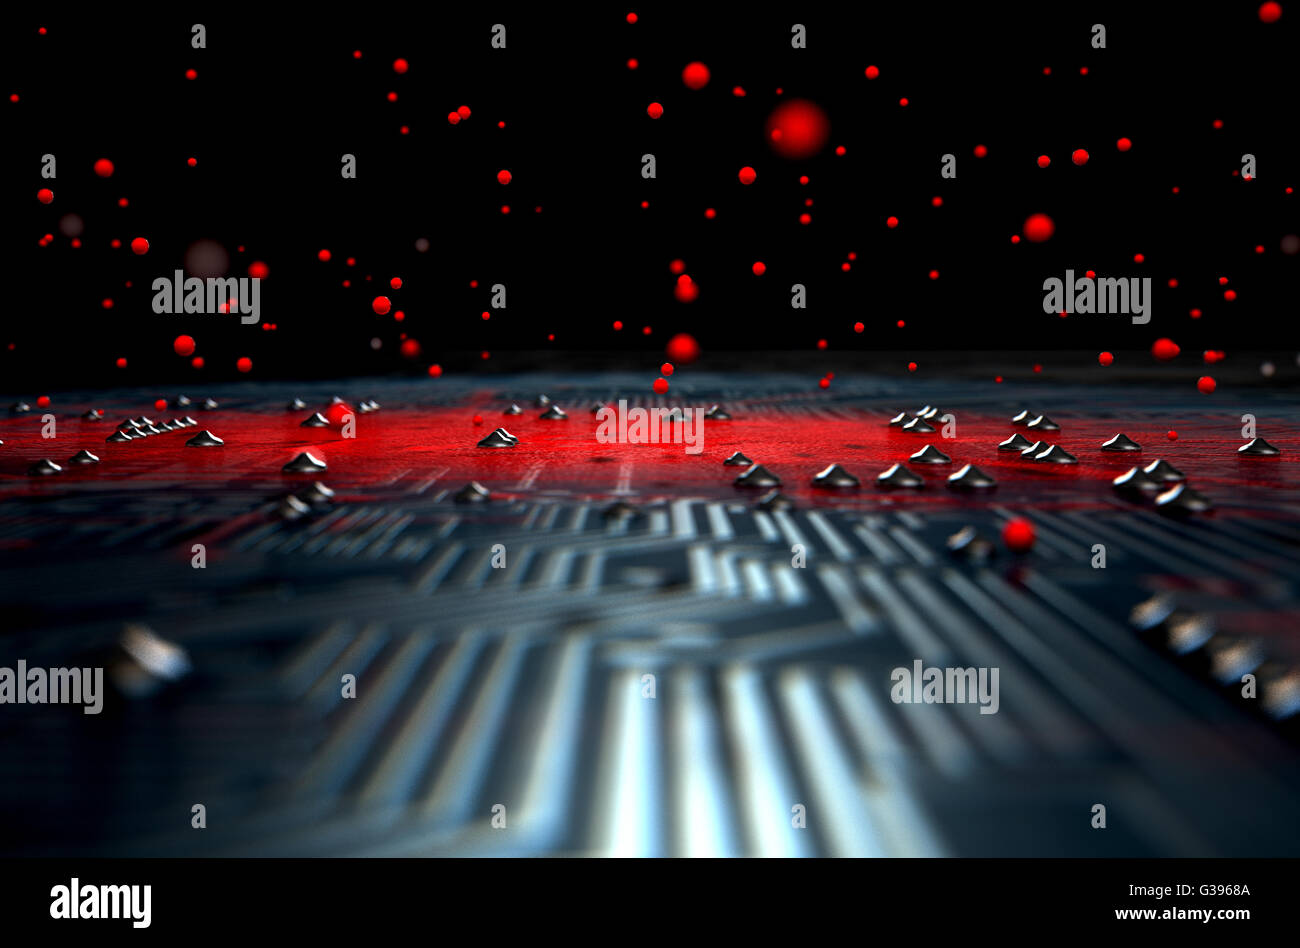 Un 3D rendering di una macro vista di una scheda a circuito stampato con un rosso infezione apparente diffusione di virus dal centro Foto Stock